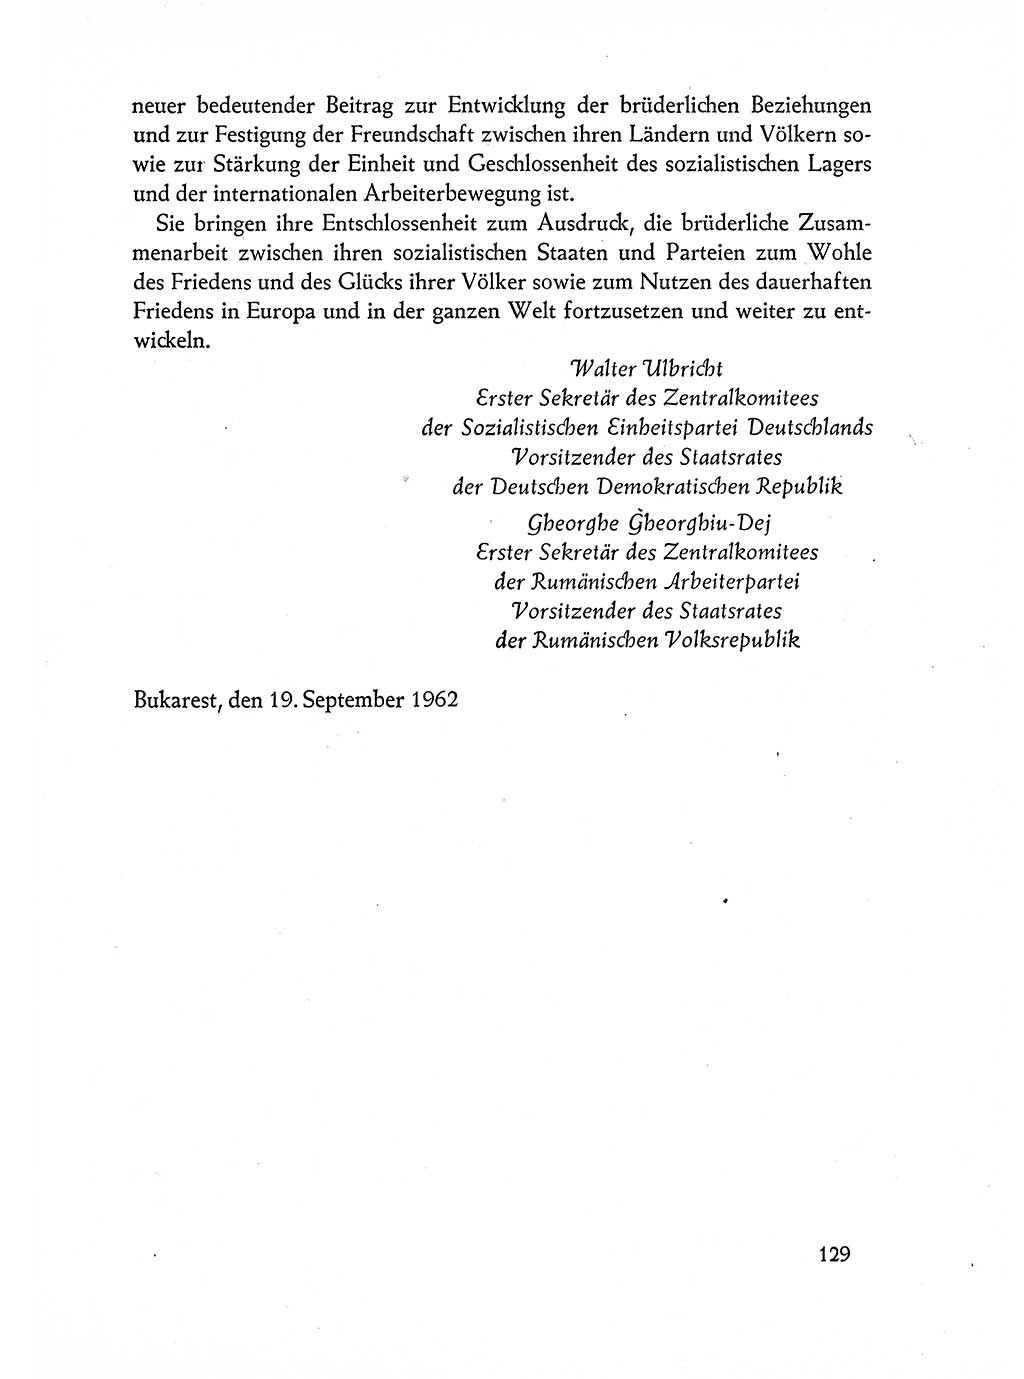 Dokumente der Sozialistischen Einheitspartei Deutschlands (SED) [Deutsche Demokratische Republik (DDR)] 1962-1963, Seite 129 (Dok. SED DDR 1962-1963, S. 129)